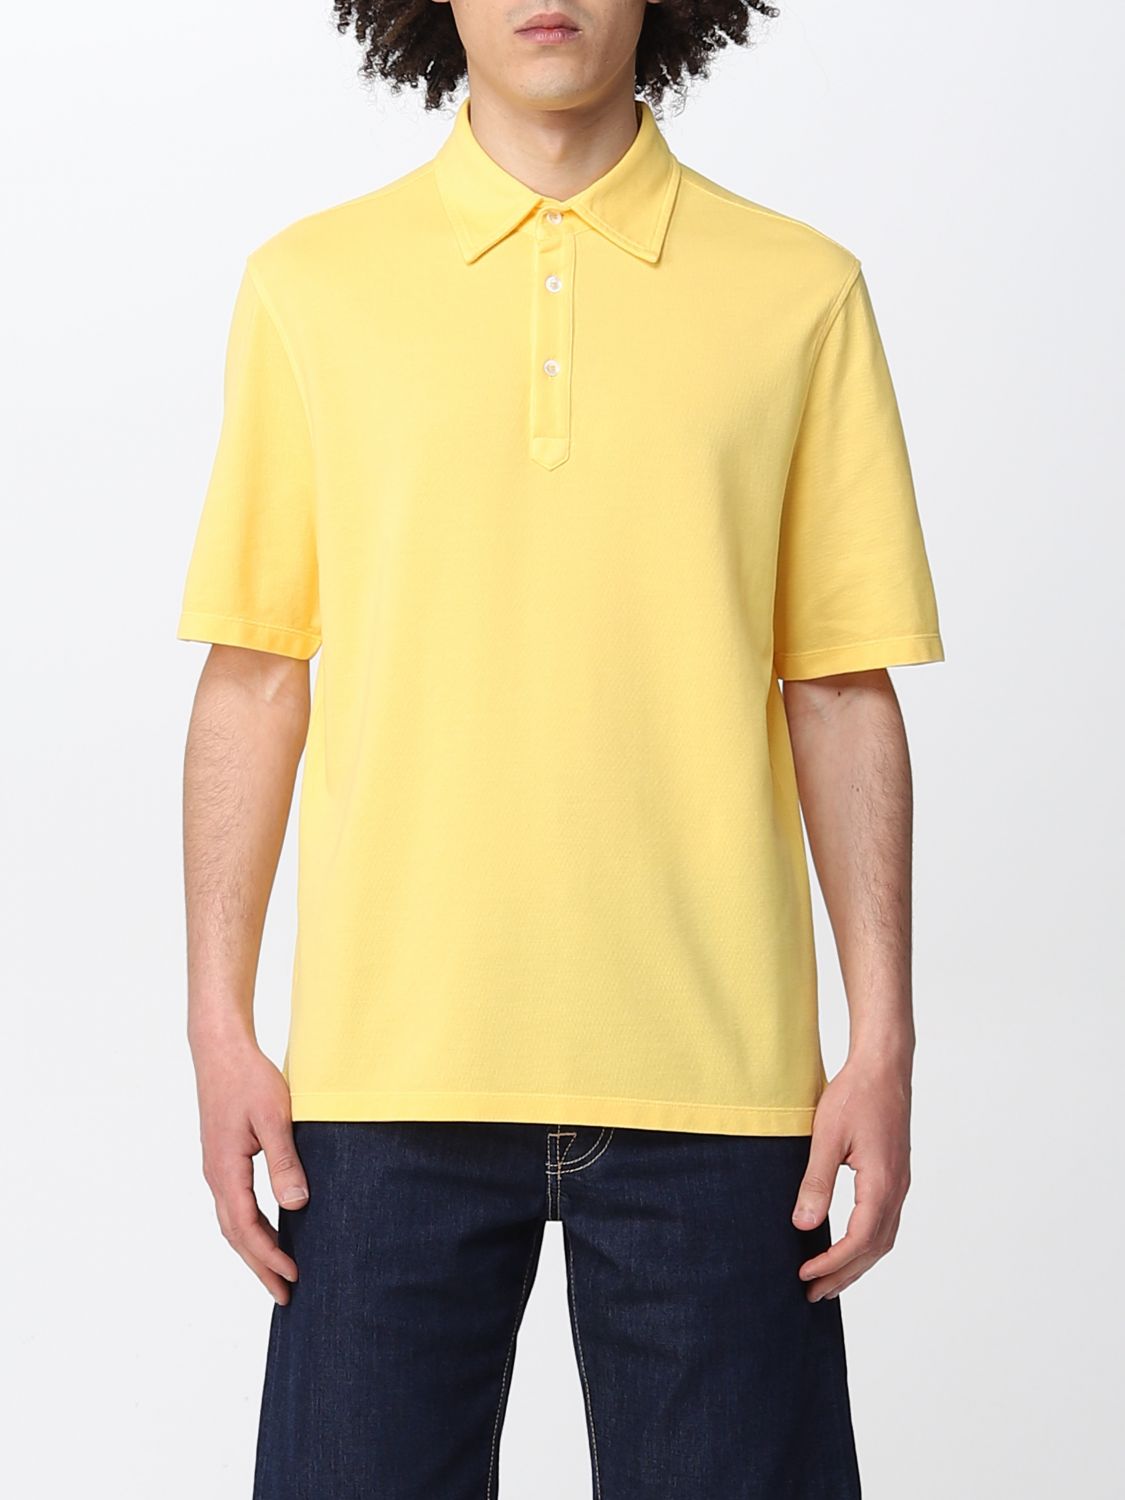 Polo shirt Malo: Malo polo shirt for men yellow 1